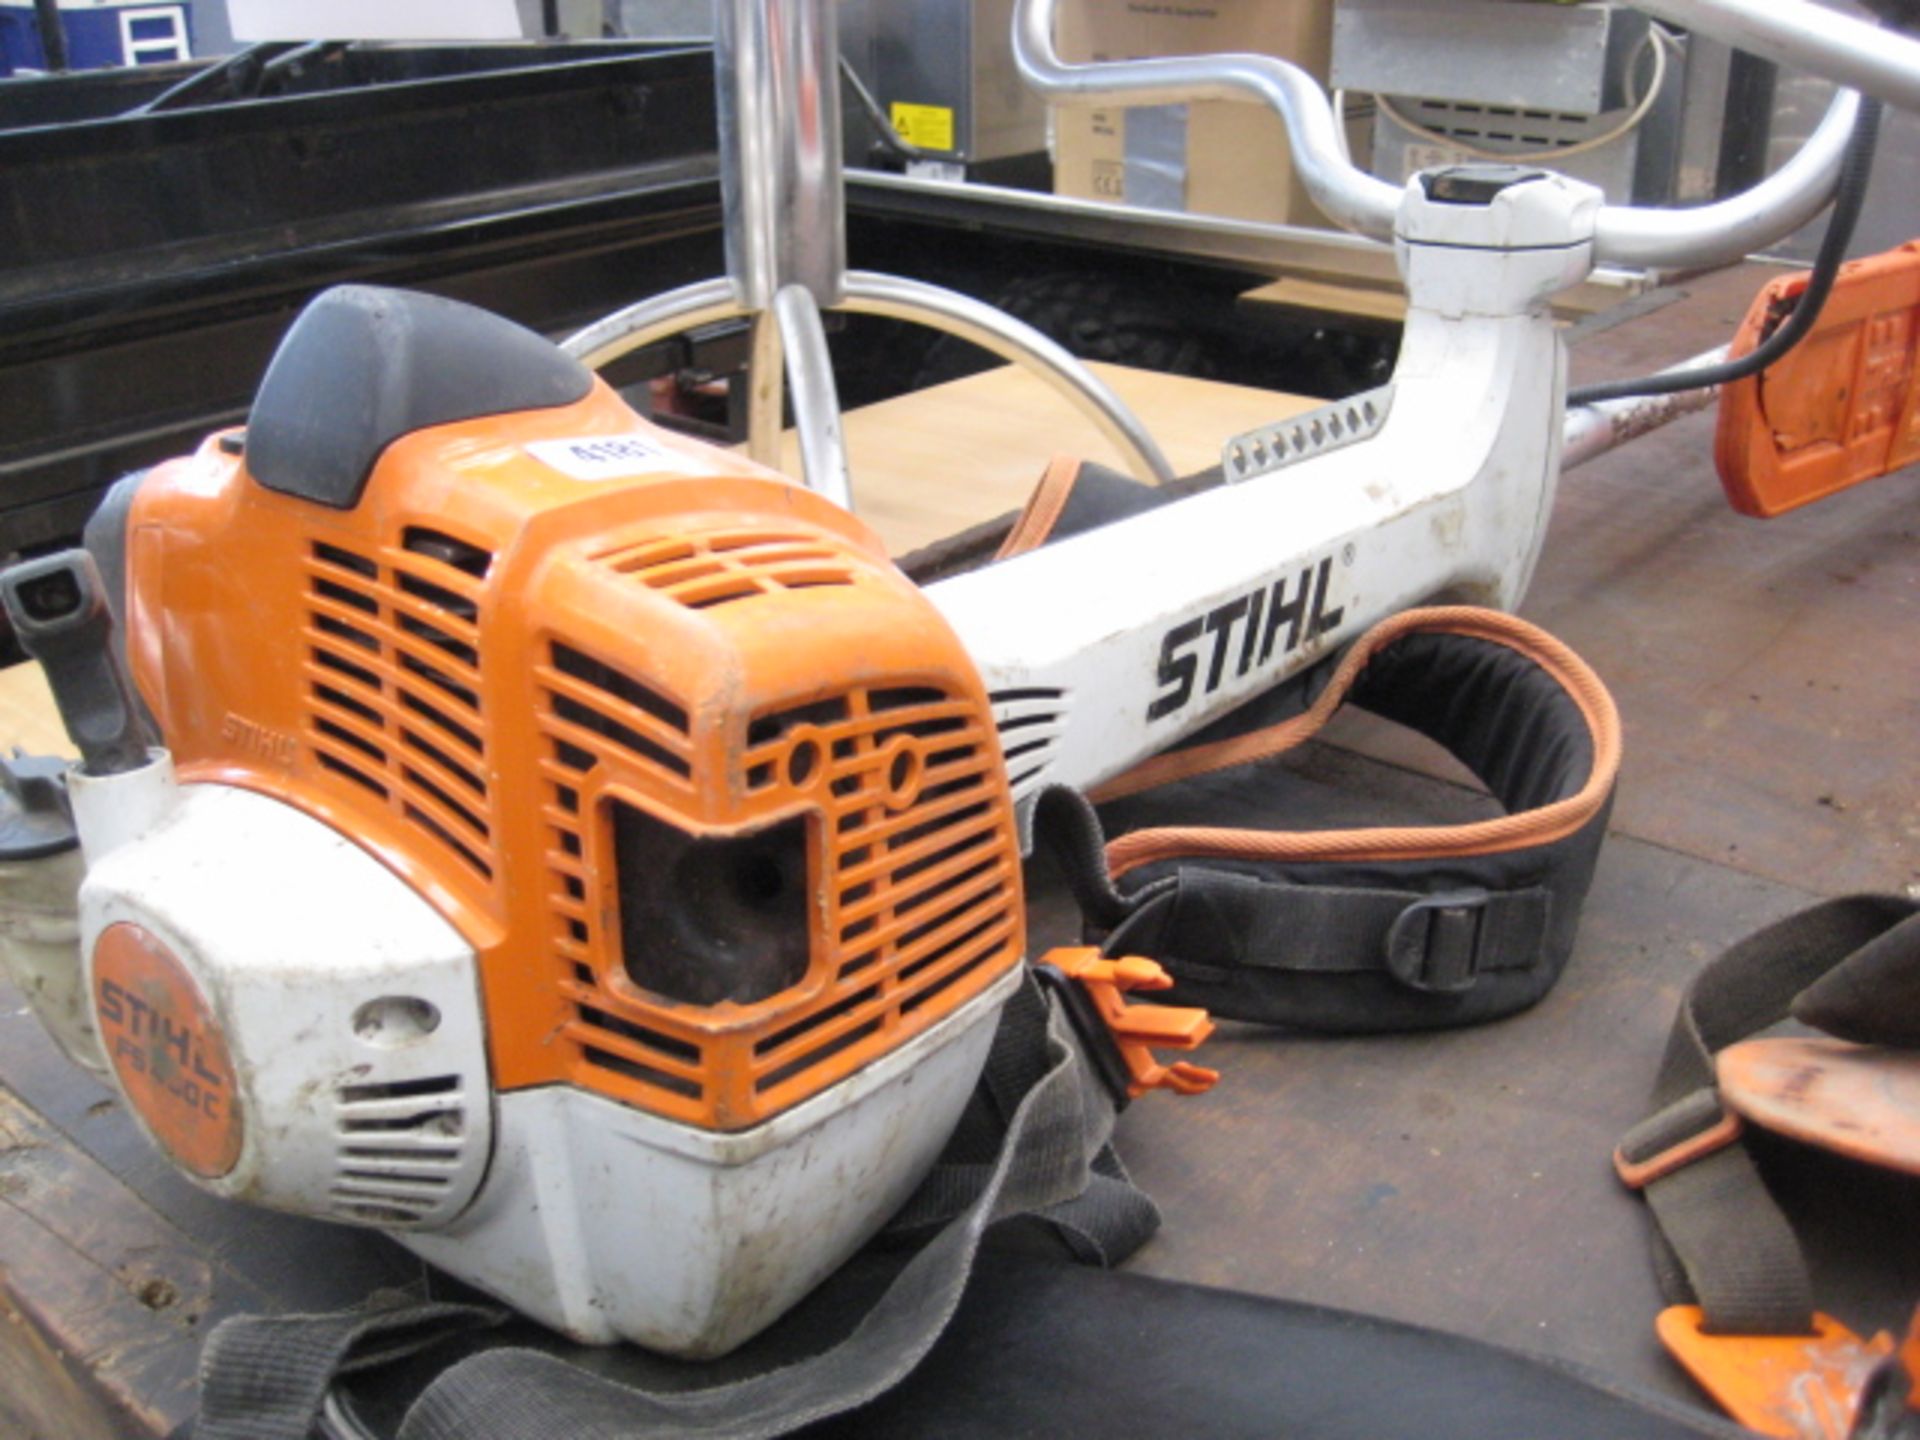 Stihl FS460C brush cutter